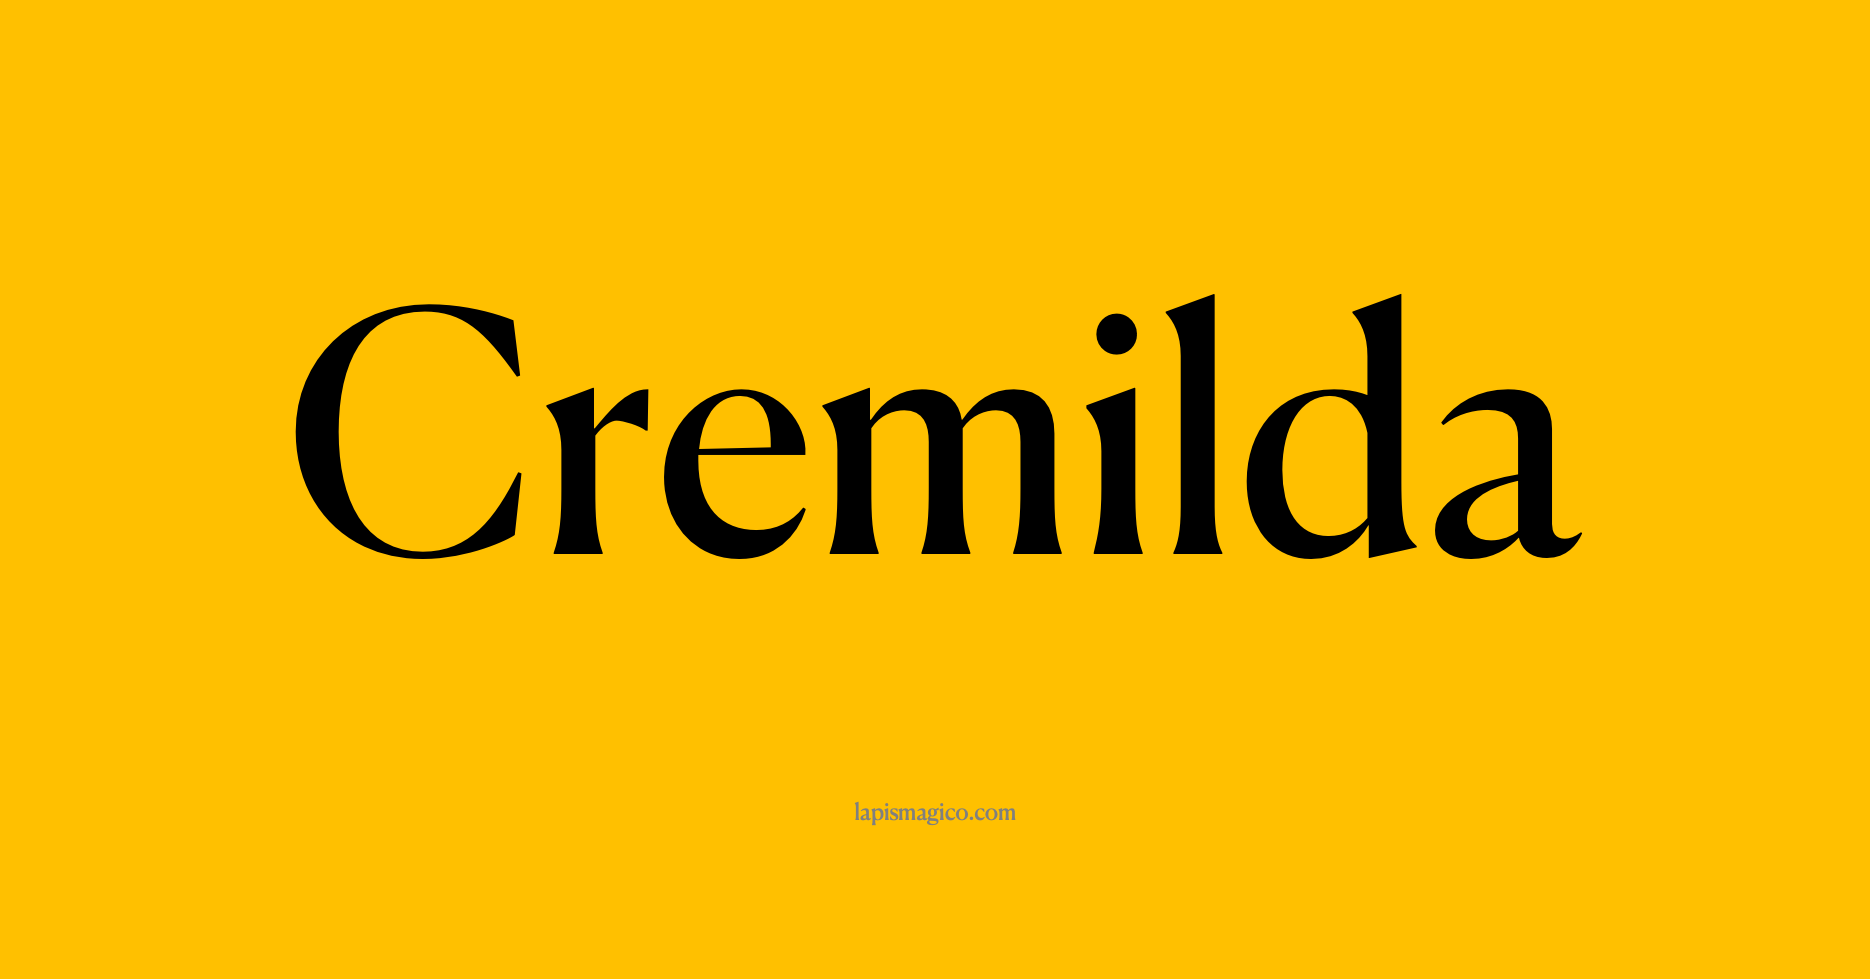 Nome Cremilda, ficha divertida com pontilhado para crianças